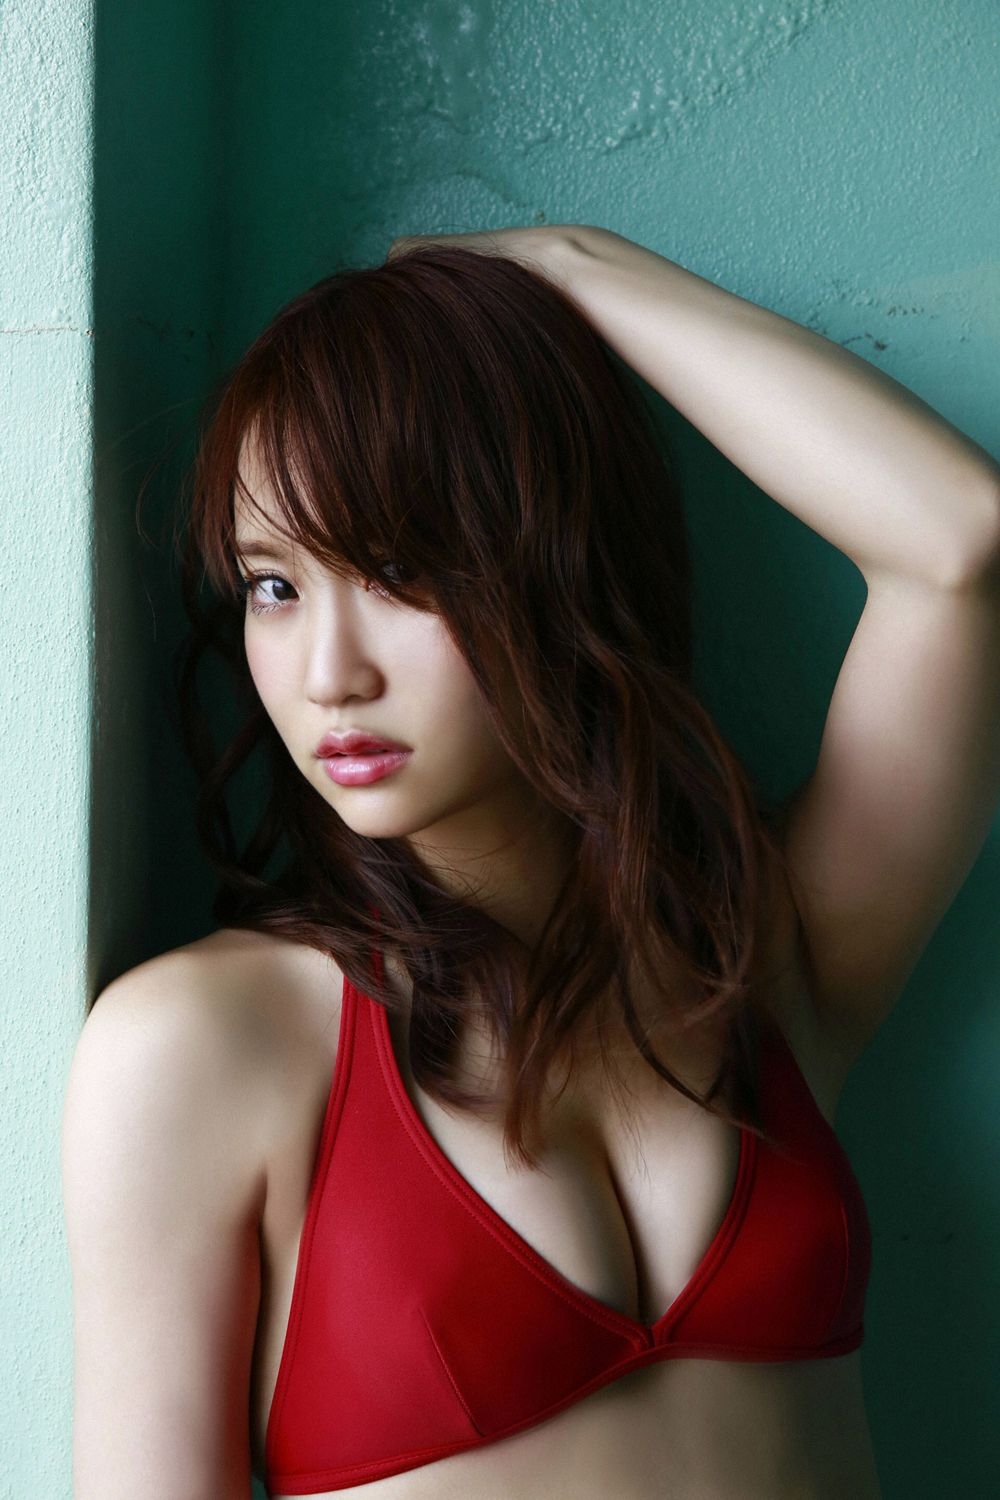 [YS-Web] Vol.794 Mariya Nagao 永尾まりや - Sexy Eyes 